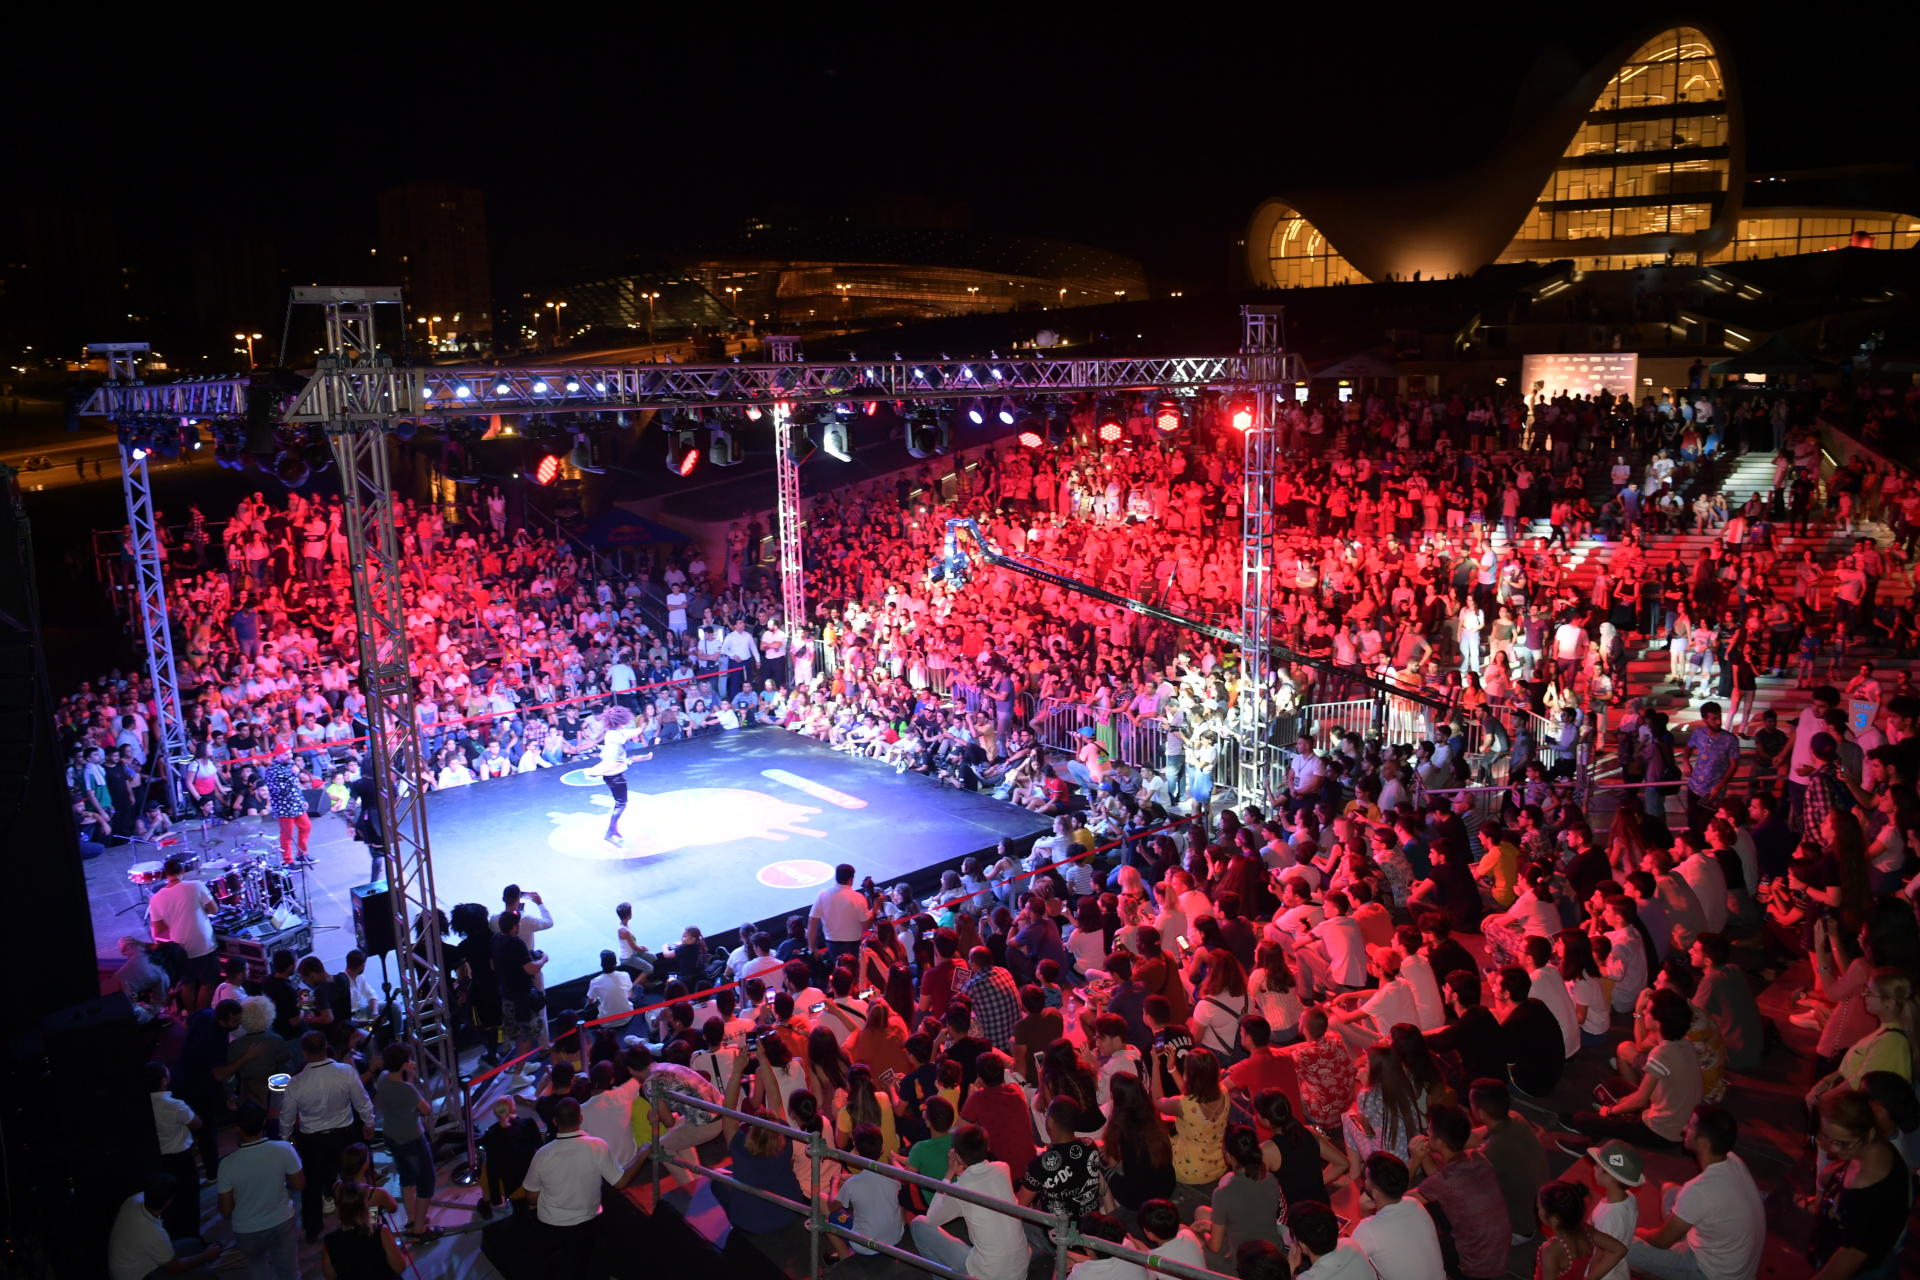 В парке Центра Гейдара Алиева прошло международное танцевальное соревнование “Red Bull Dance Your Style” (ФОТО)